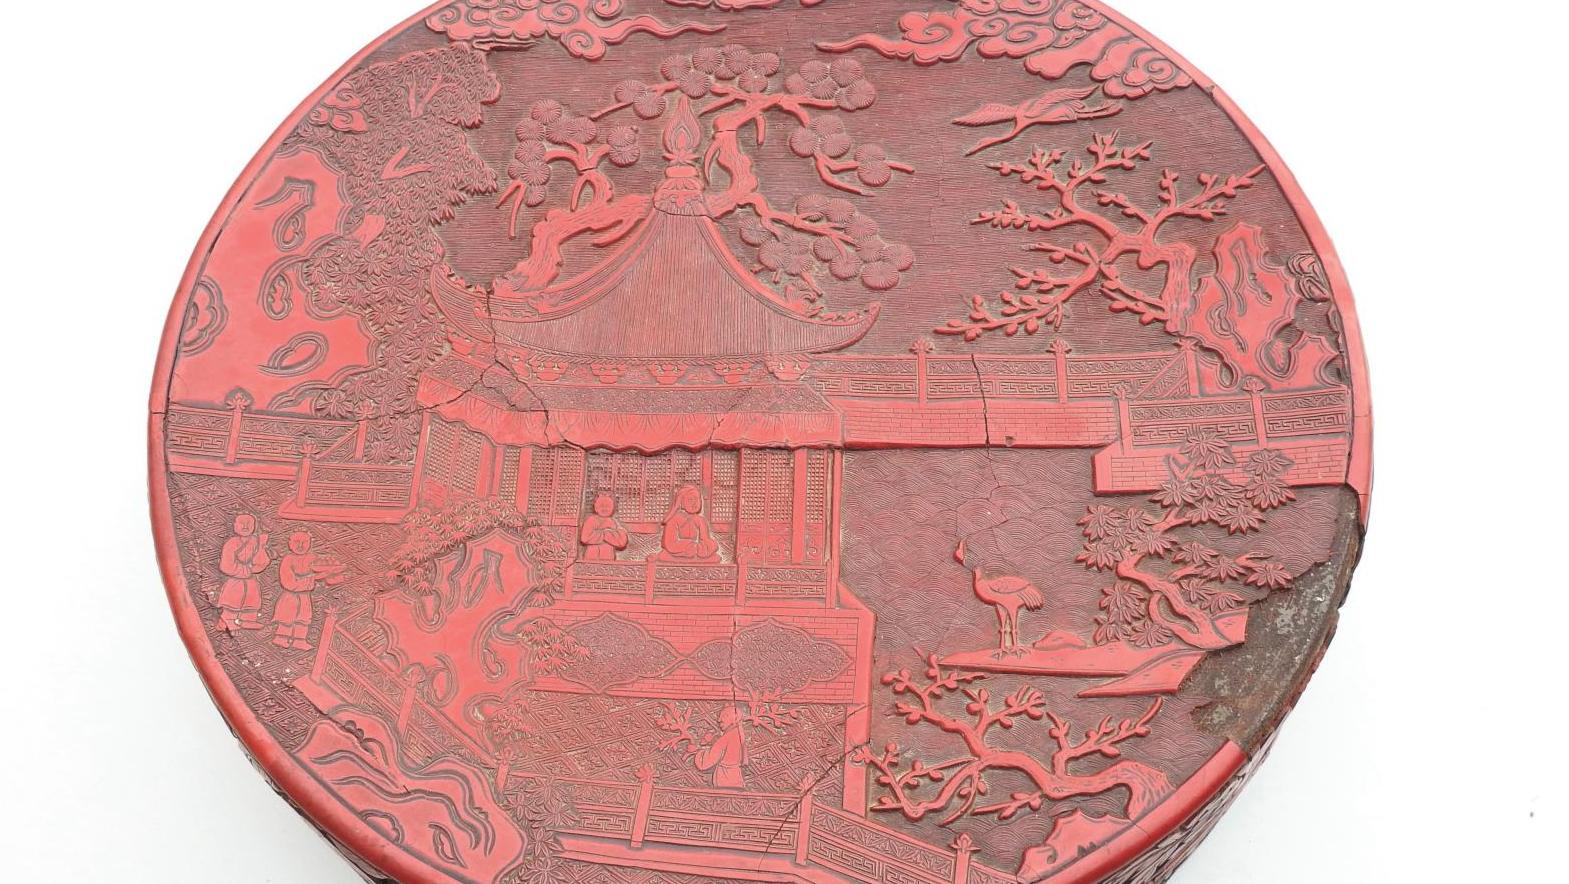 Chine, époque Ming (1368 - 1644), XVIe siècle. Boîte ronde en laque rouge cinabre... Des laques et porcelaines de Chine très désirables